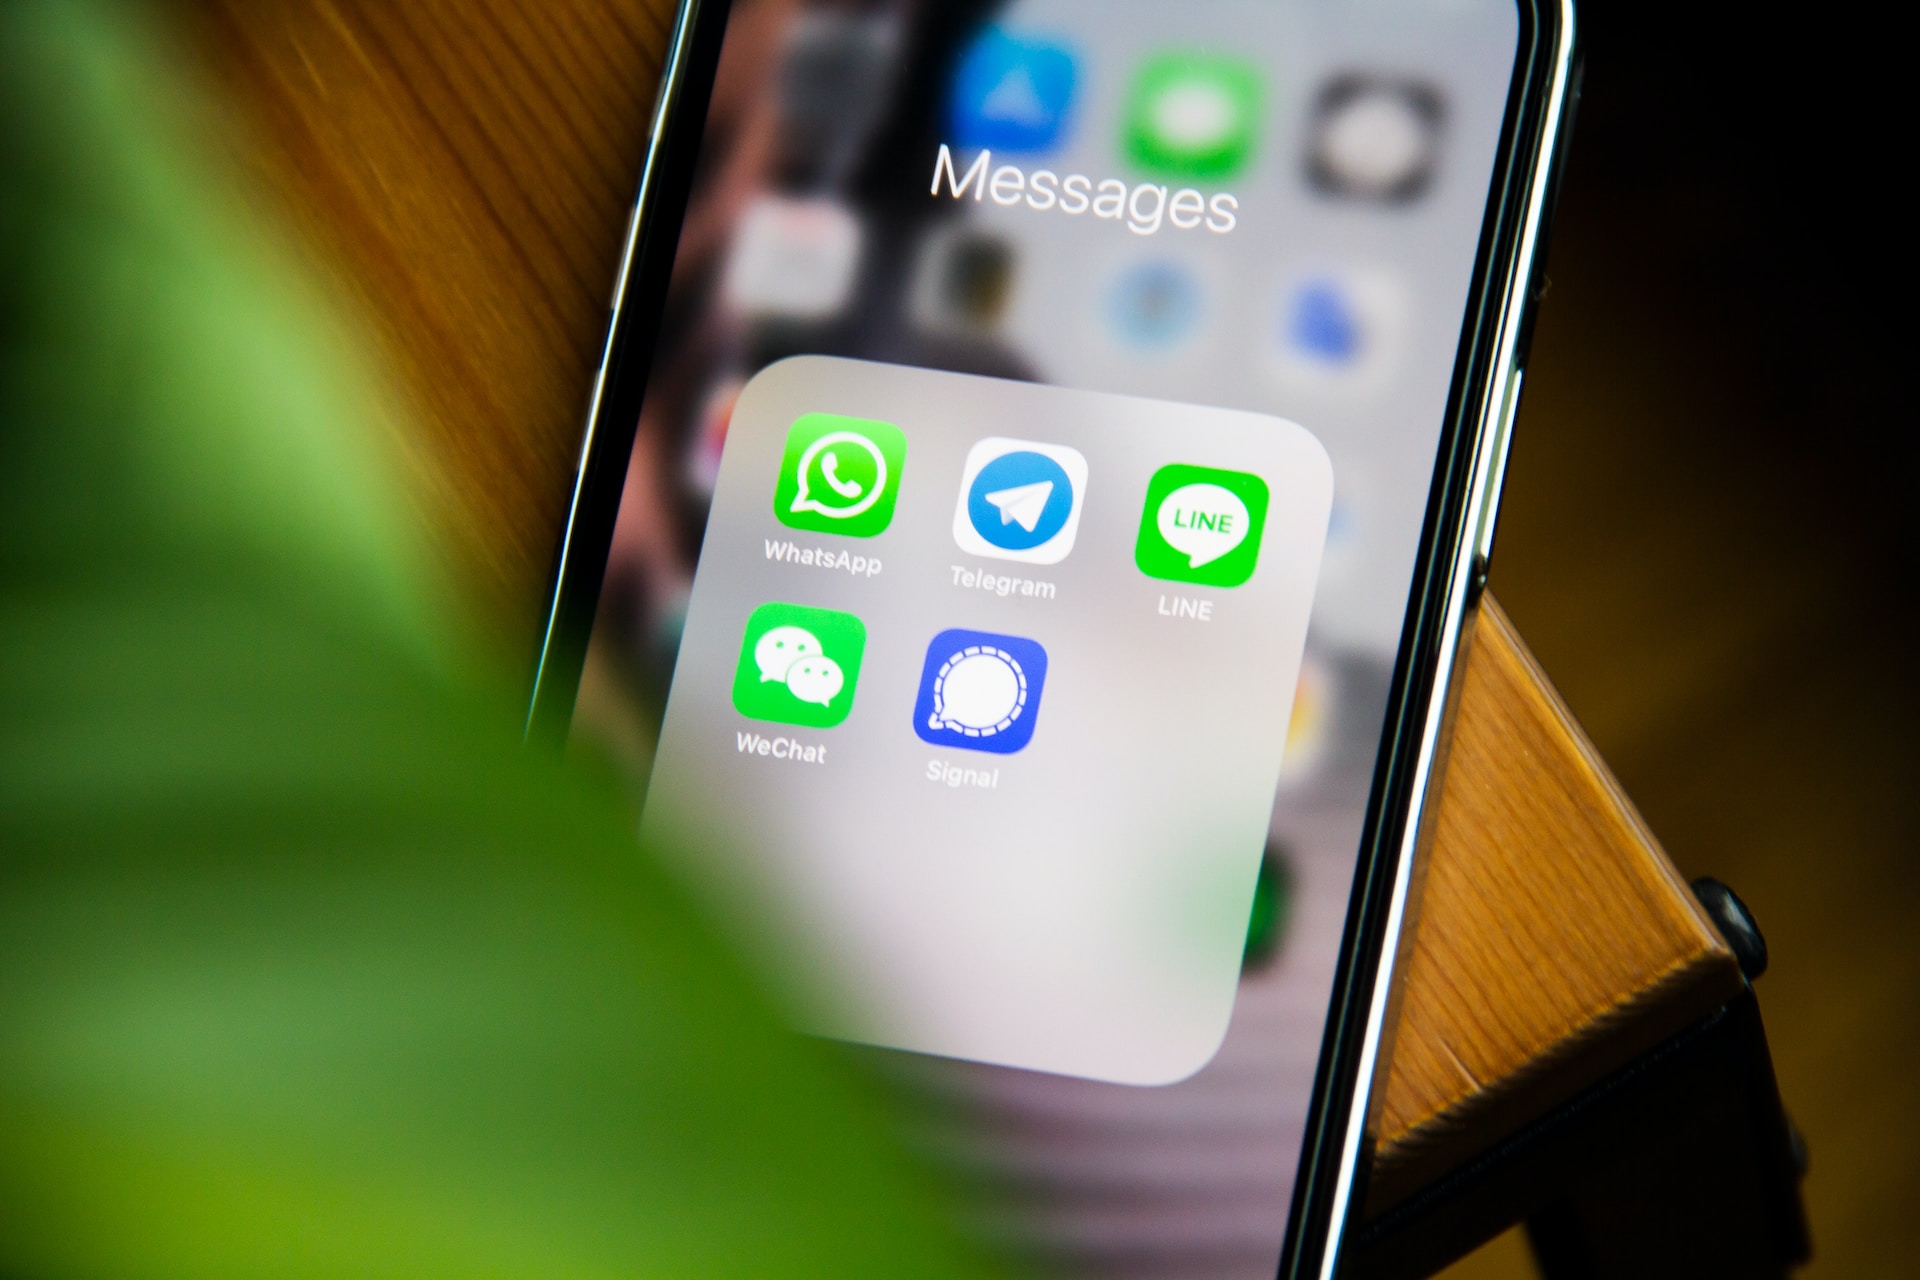 Les icones des applications telegram signal whatsapp line et wechat affichées sur un écran de smartphone.